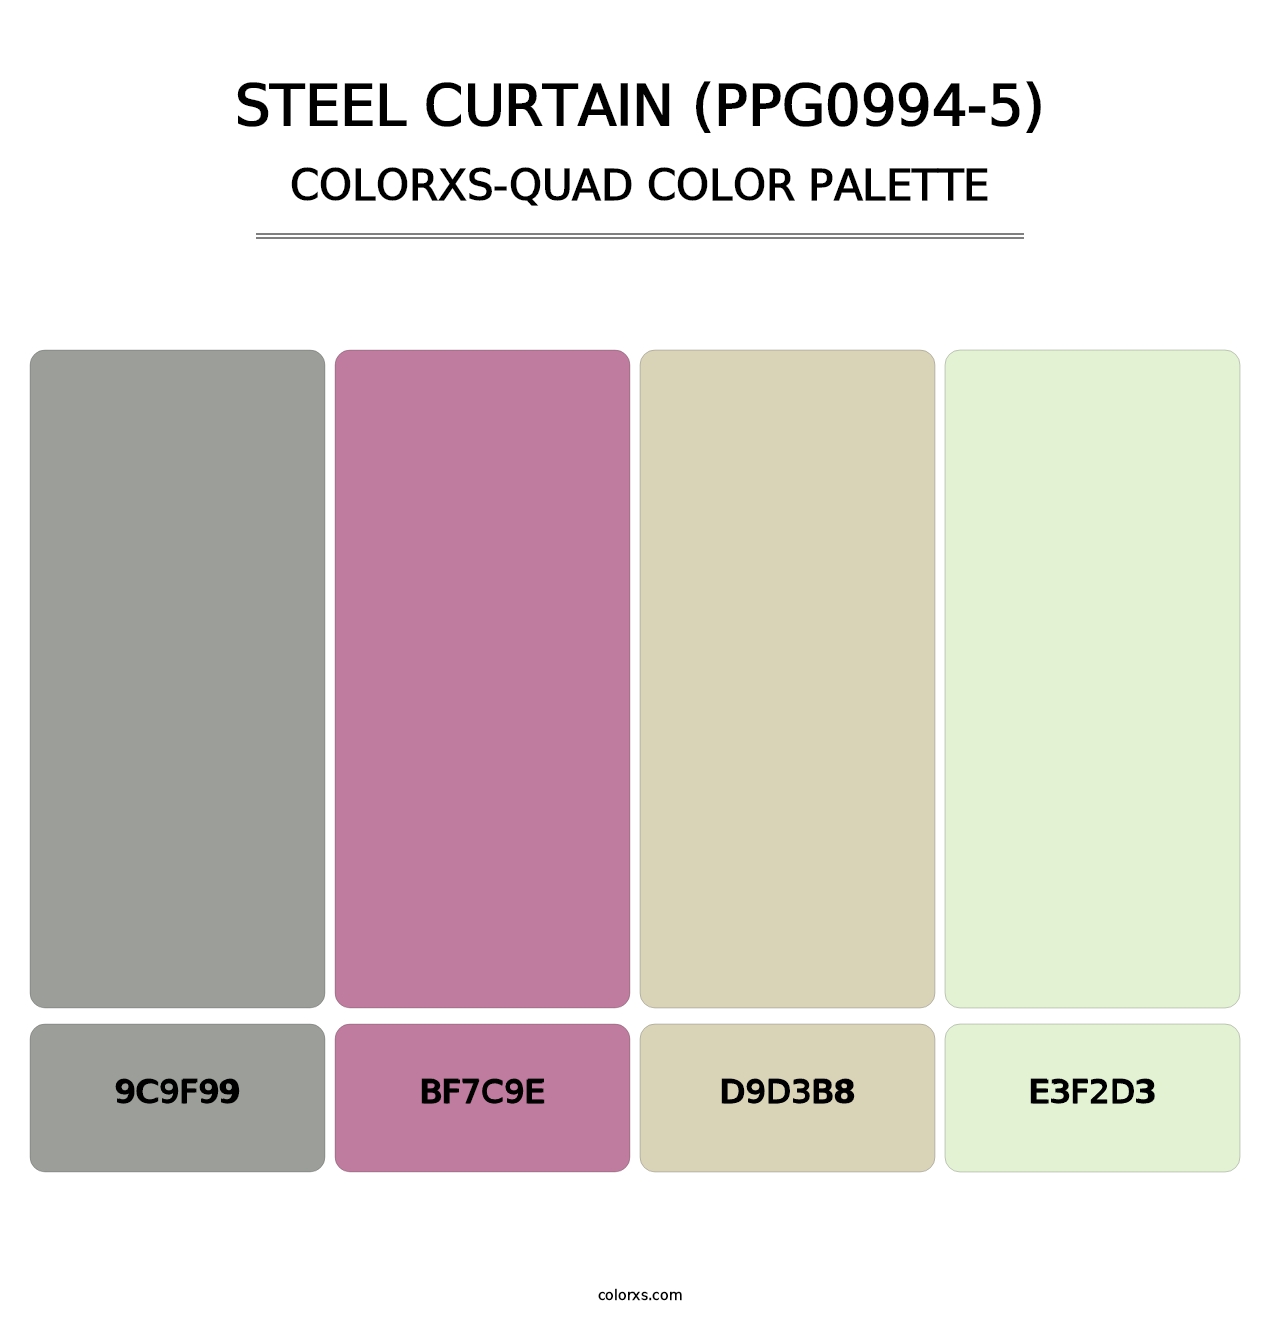 Steel Curtain (PPG0994-5) - Colorxs Quad Palette